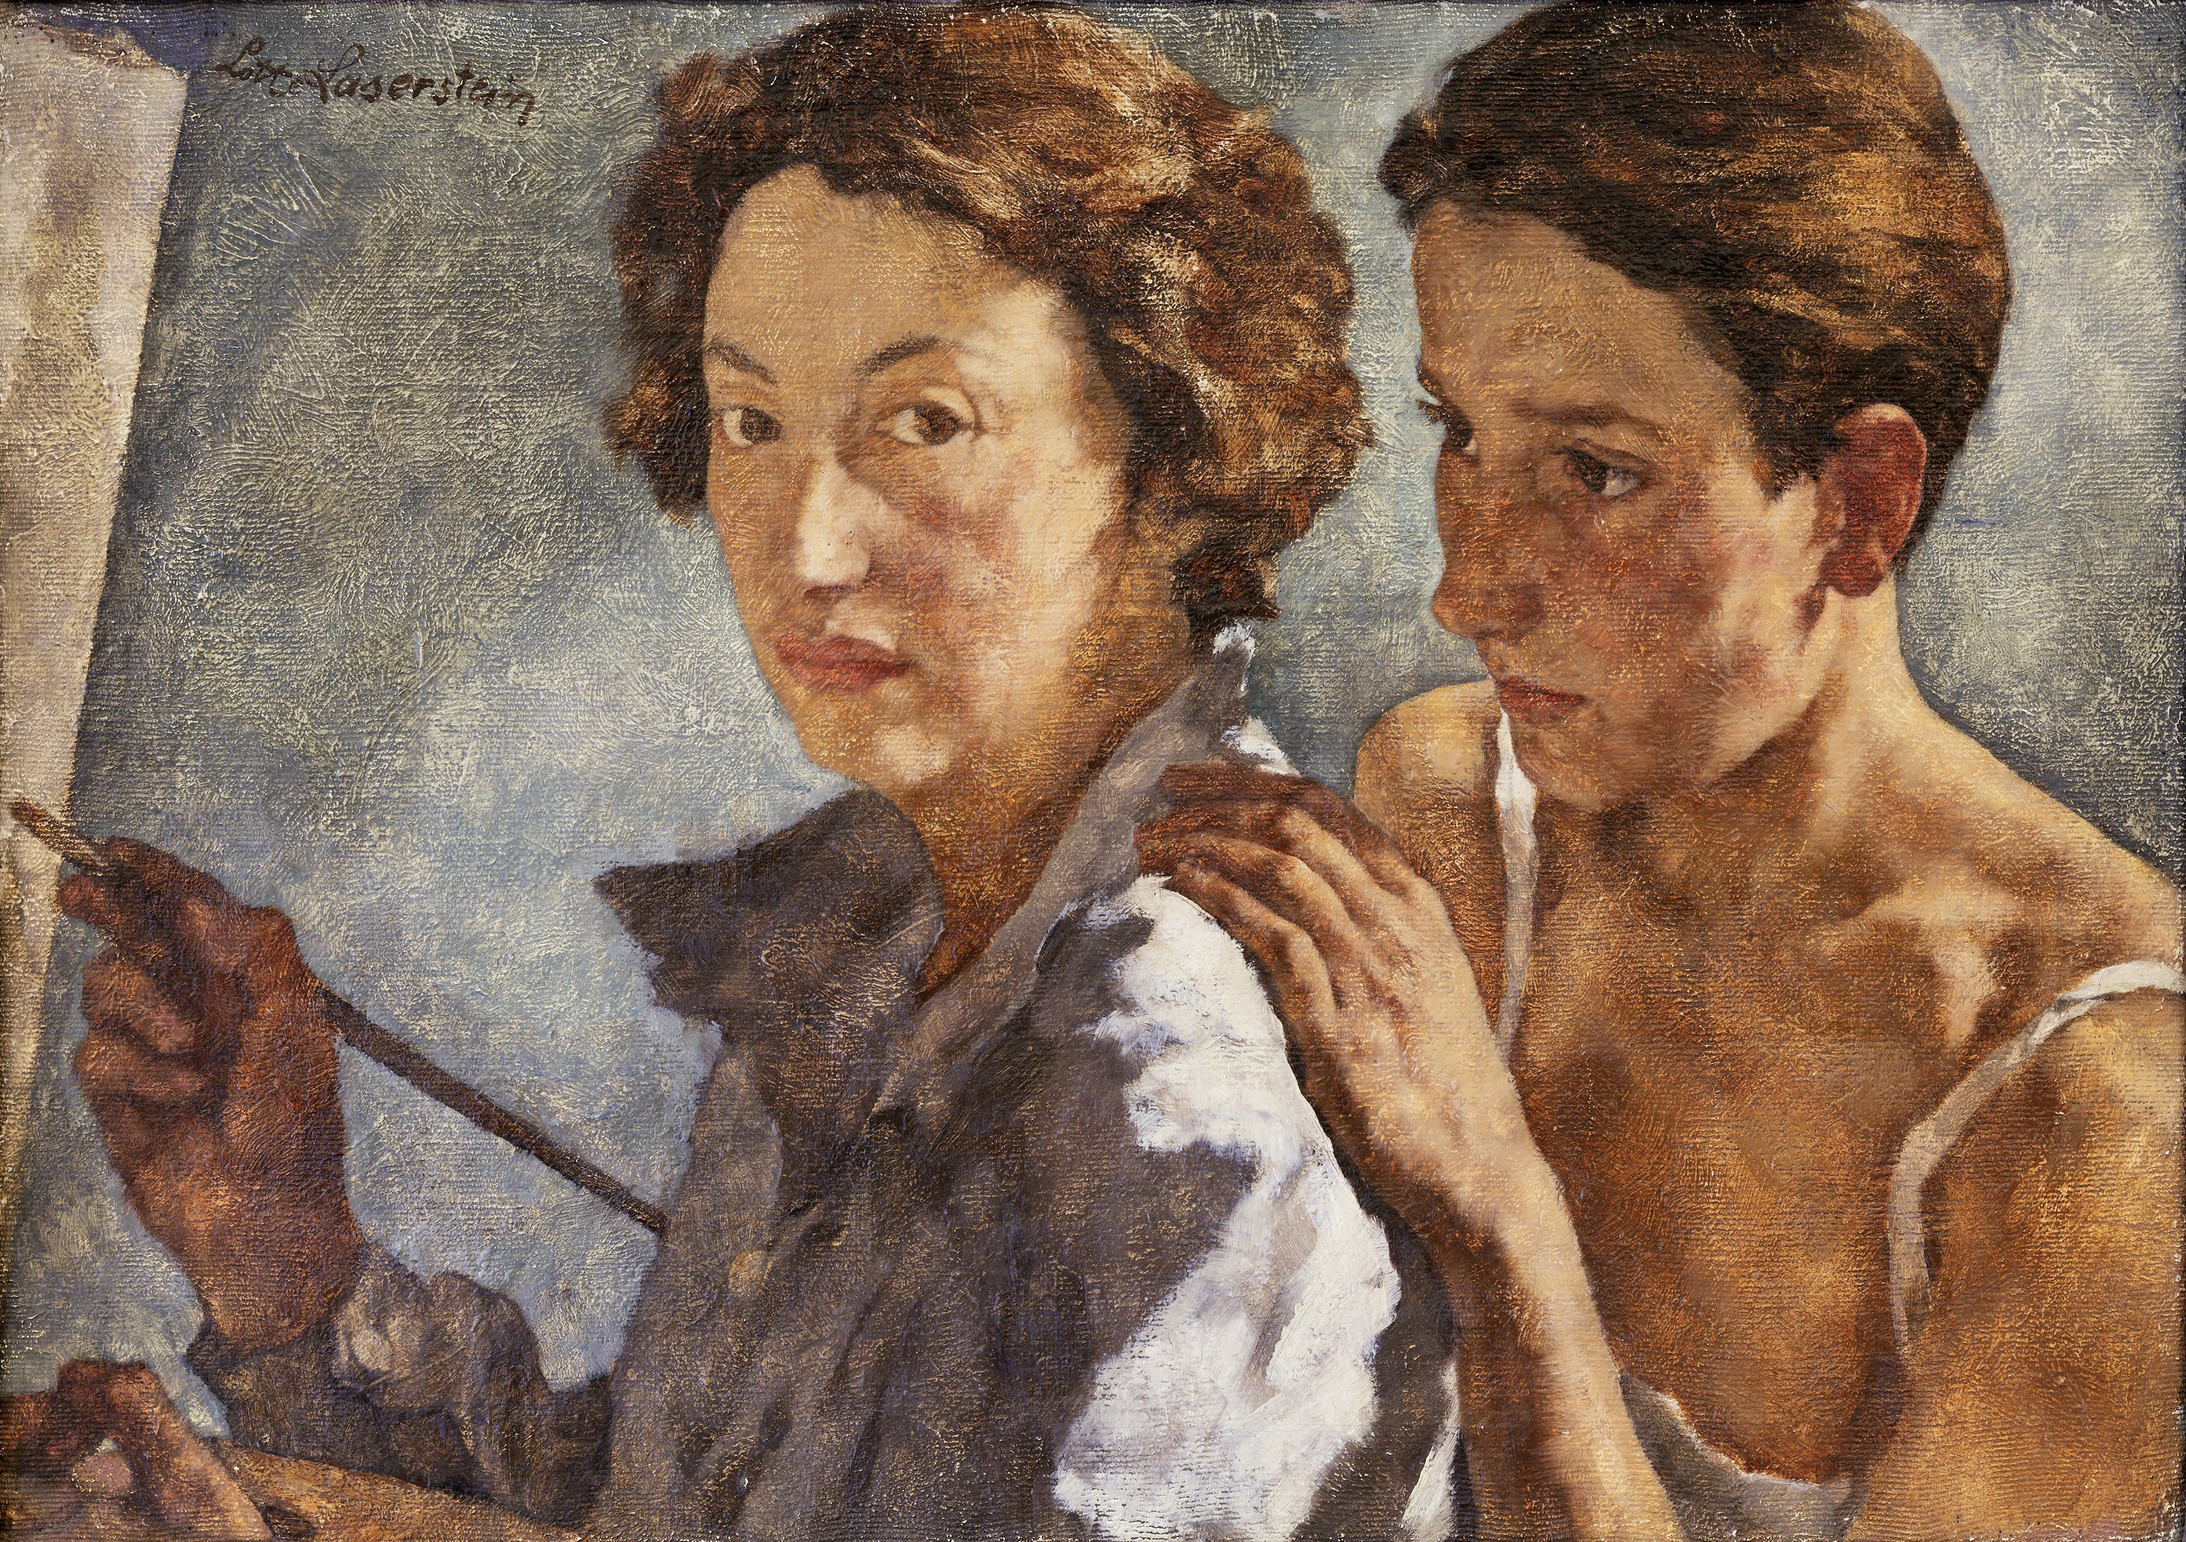 Lotte Laserstein: Ich und mein Modell, 1929/30, Öl auf Leinwand, 49,5 x 69,5 cm; Private family collection, © 2021, ProLitteris, Zurich